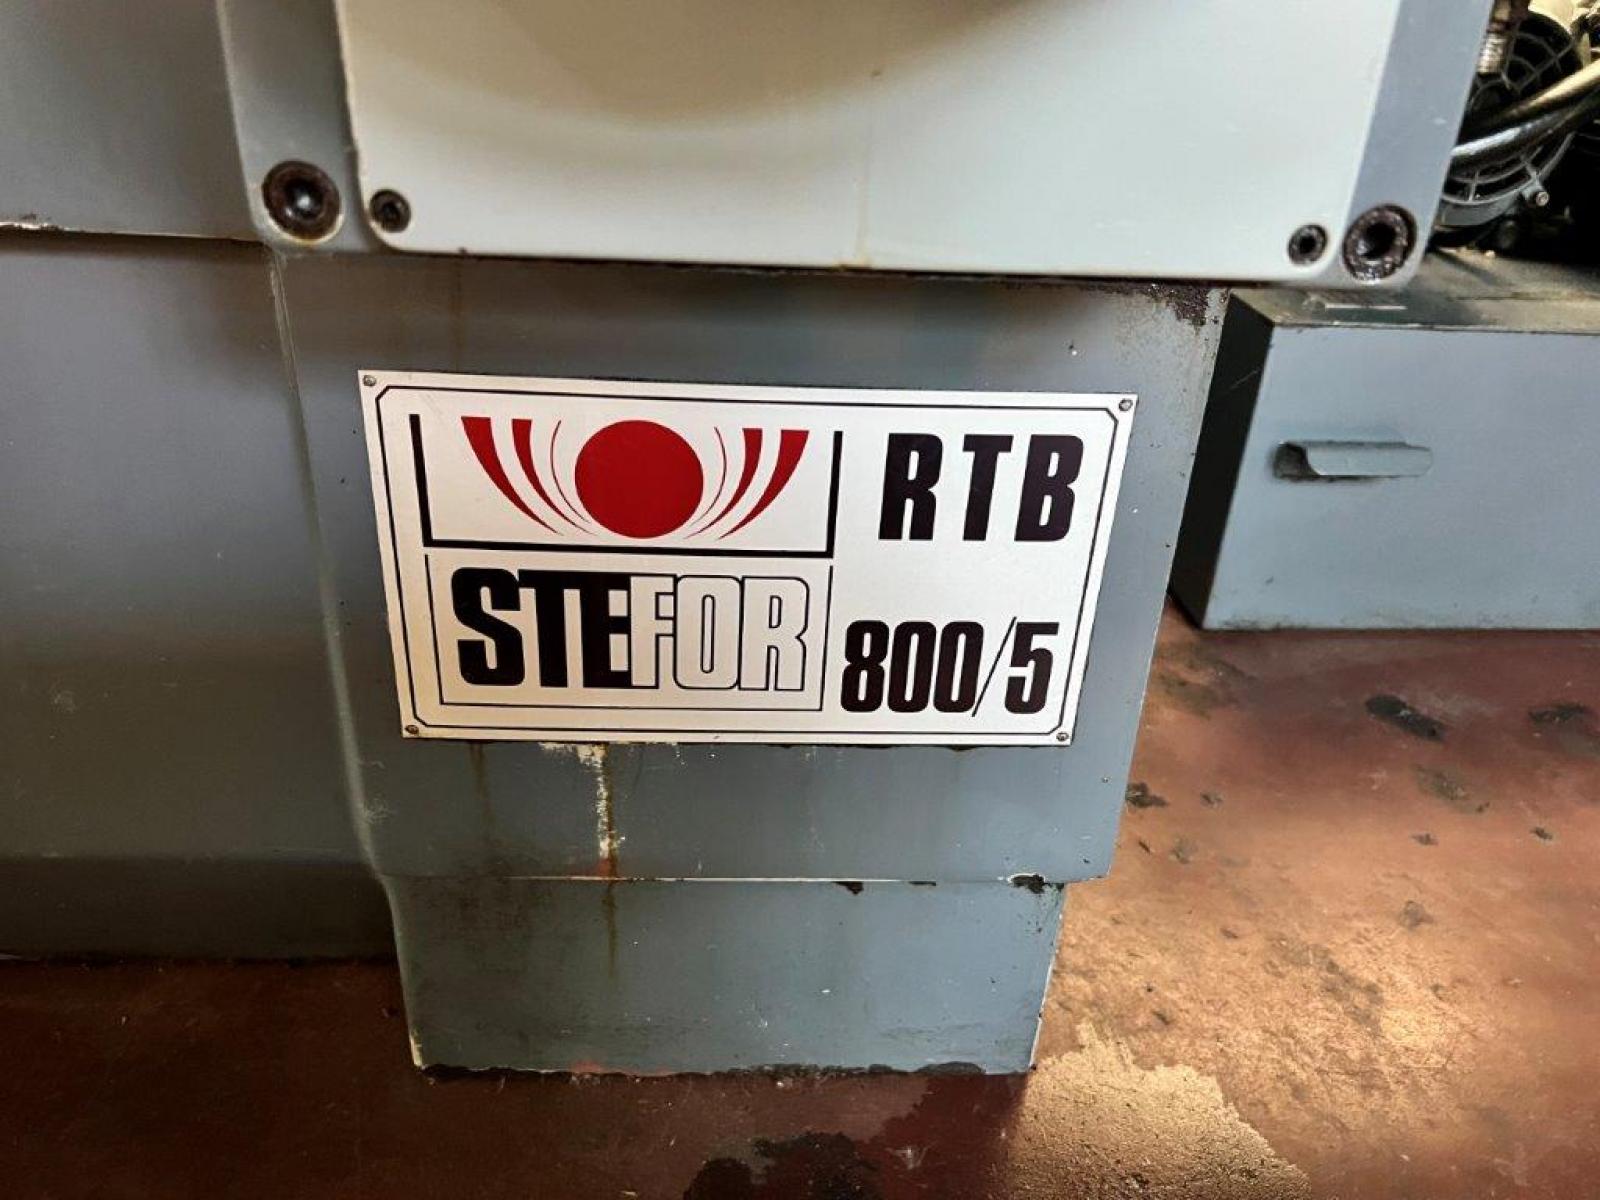 Rettifica Tangenziale STEFOR RTB 800/5, disponibile presso ns sede in pronta consegna Salvo Venduto